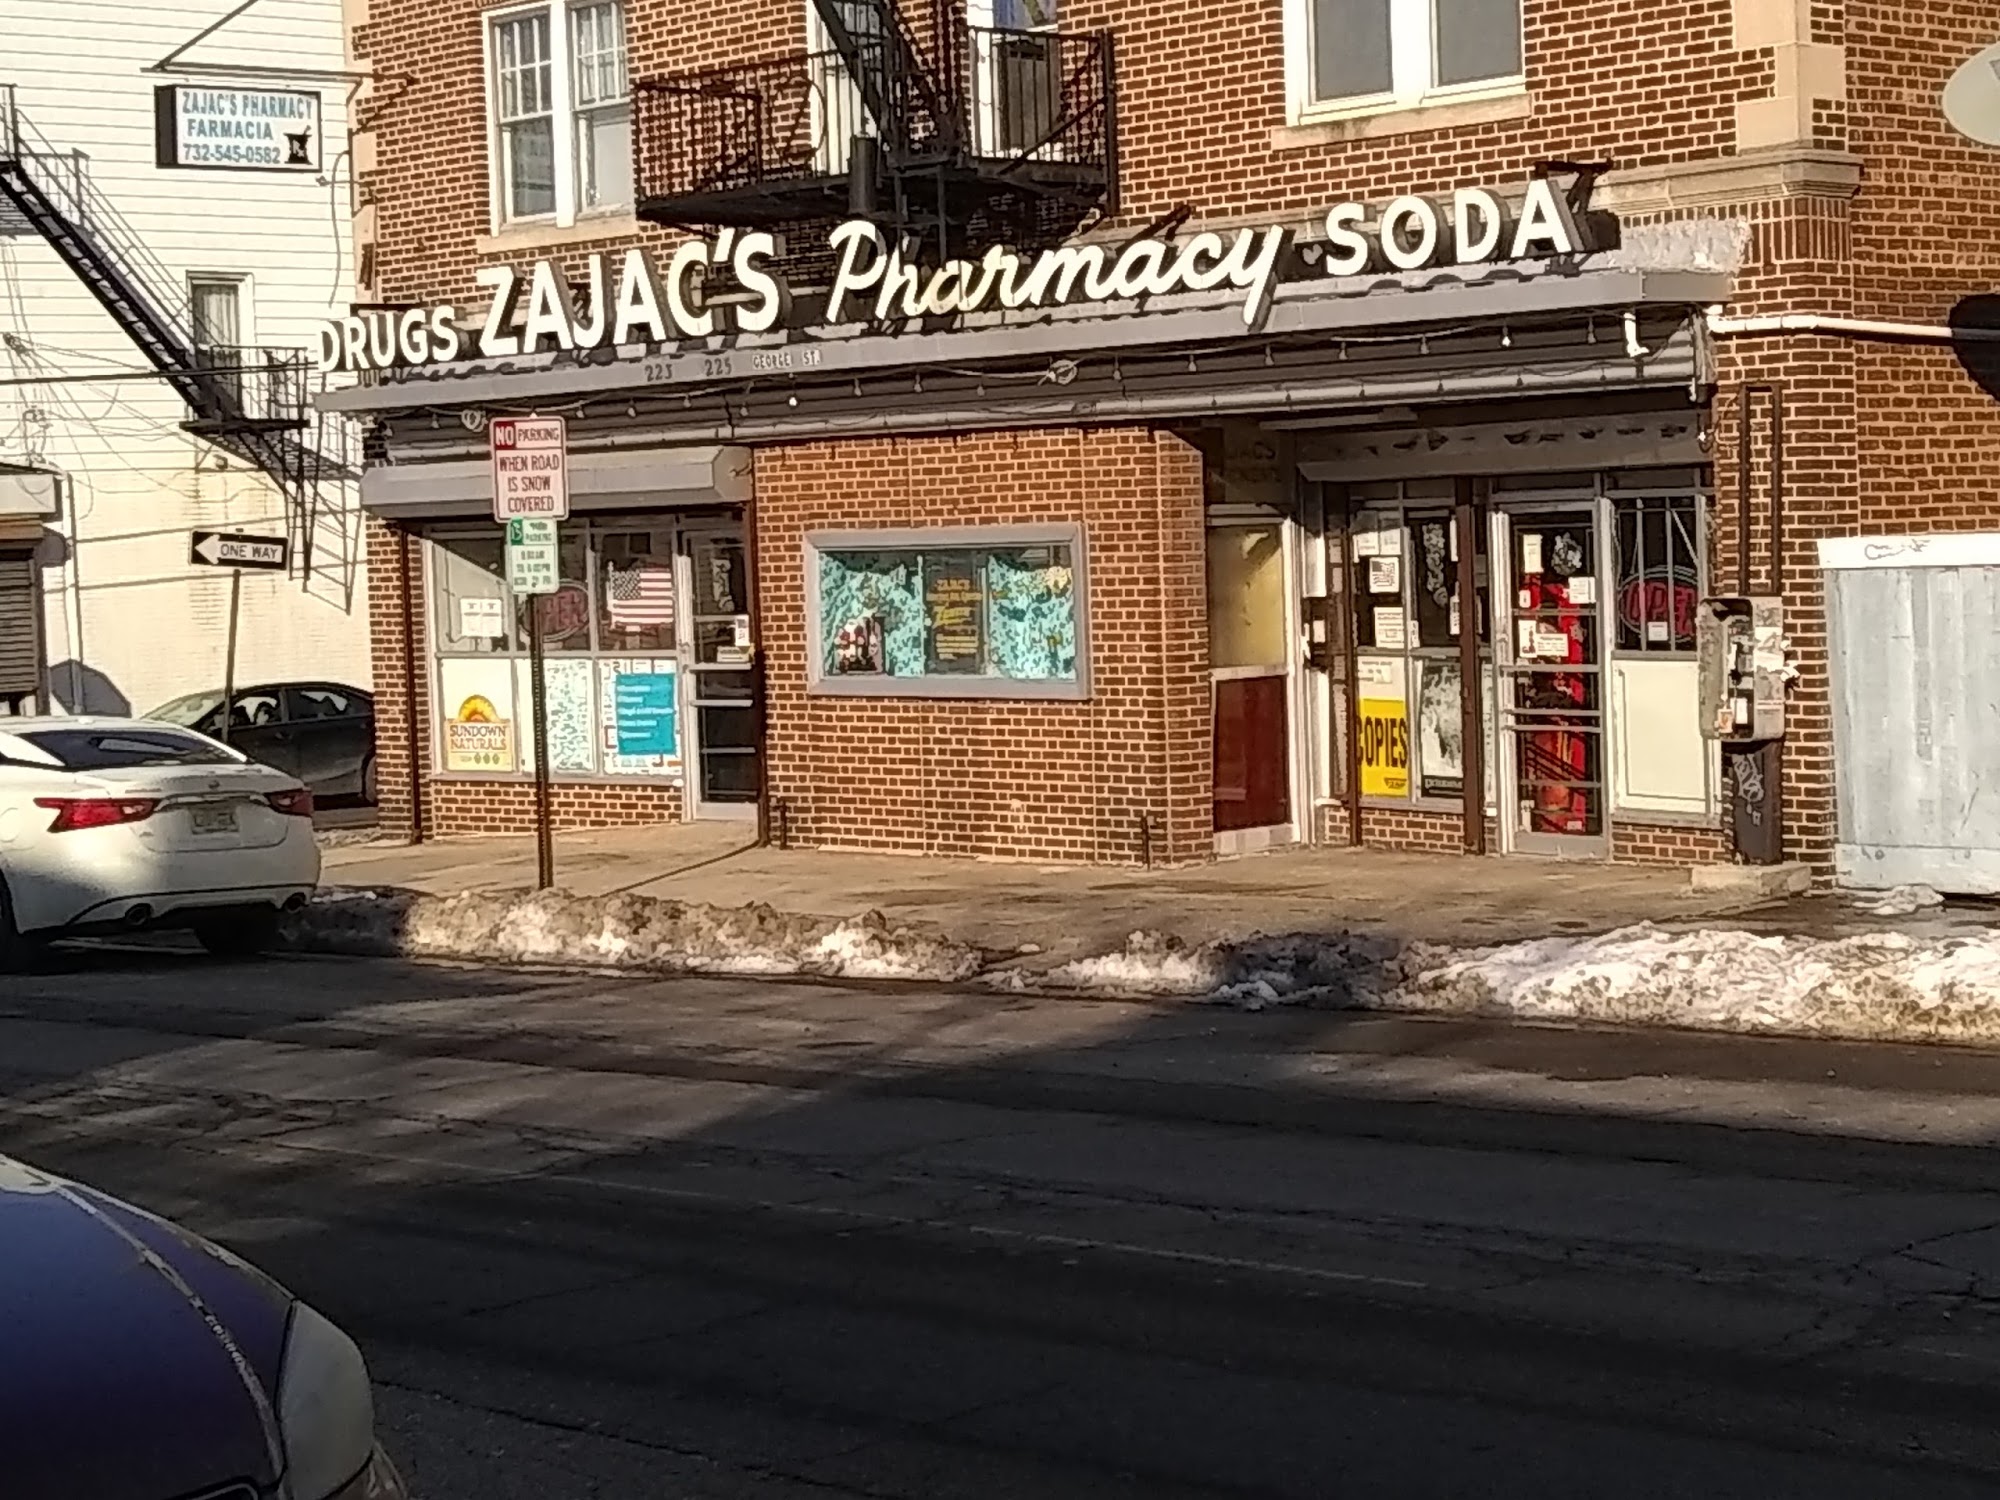 Zajac's Pharmacy